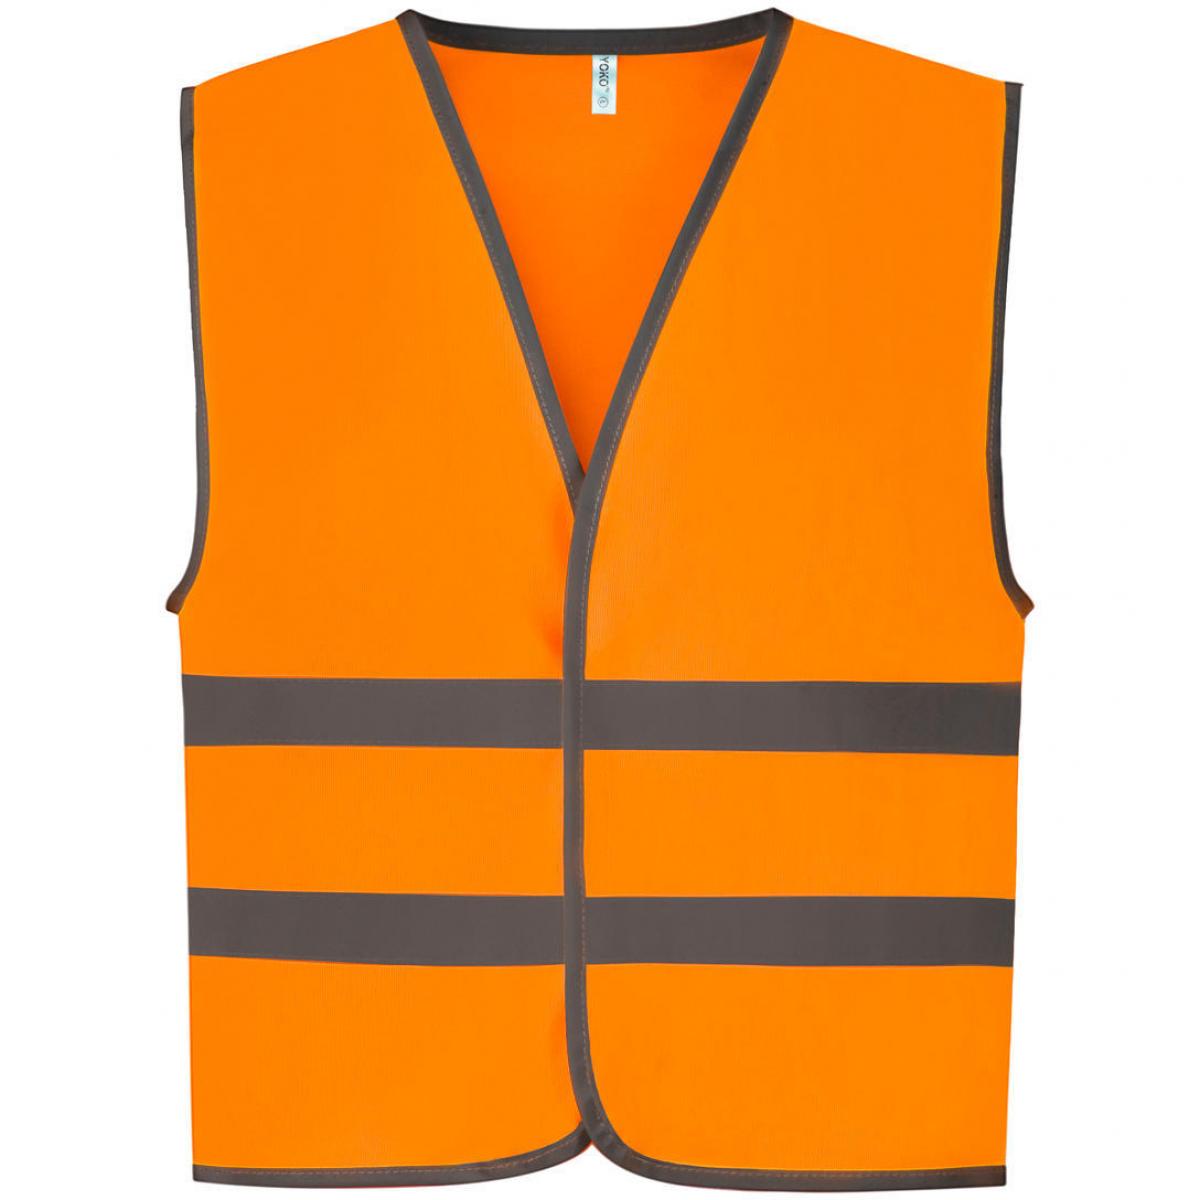 Hersteller: YOKO Herstellernummer: HVW102CH Artikelbezeichnung: Kids Fluo Reflective Border Waistcoat - Sicherheitsweste Farbe: Orange